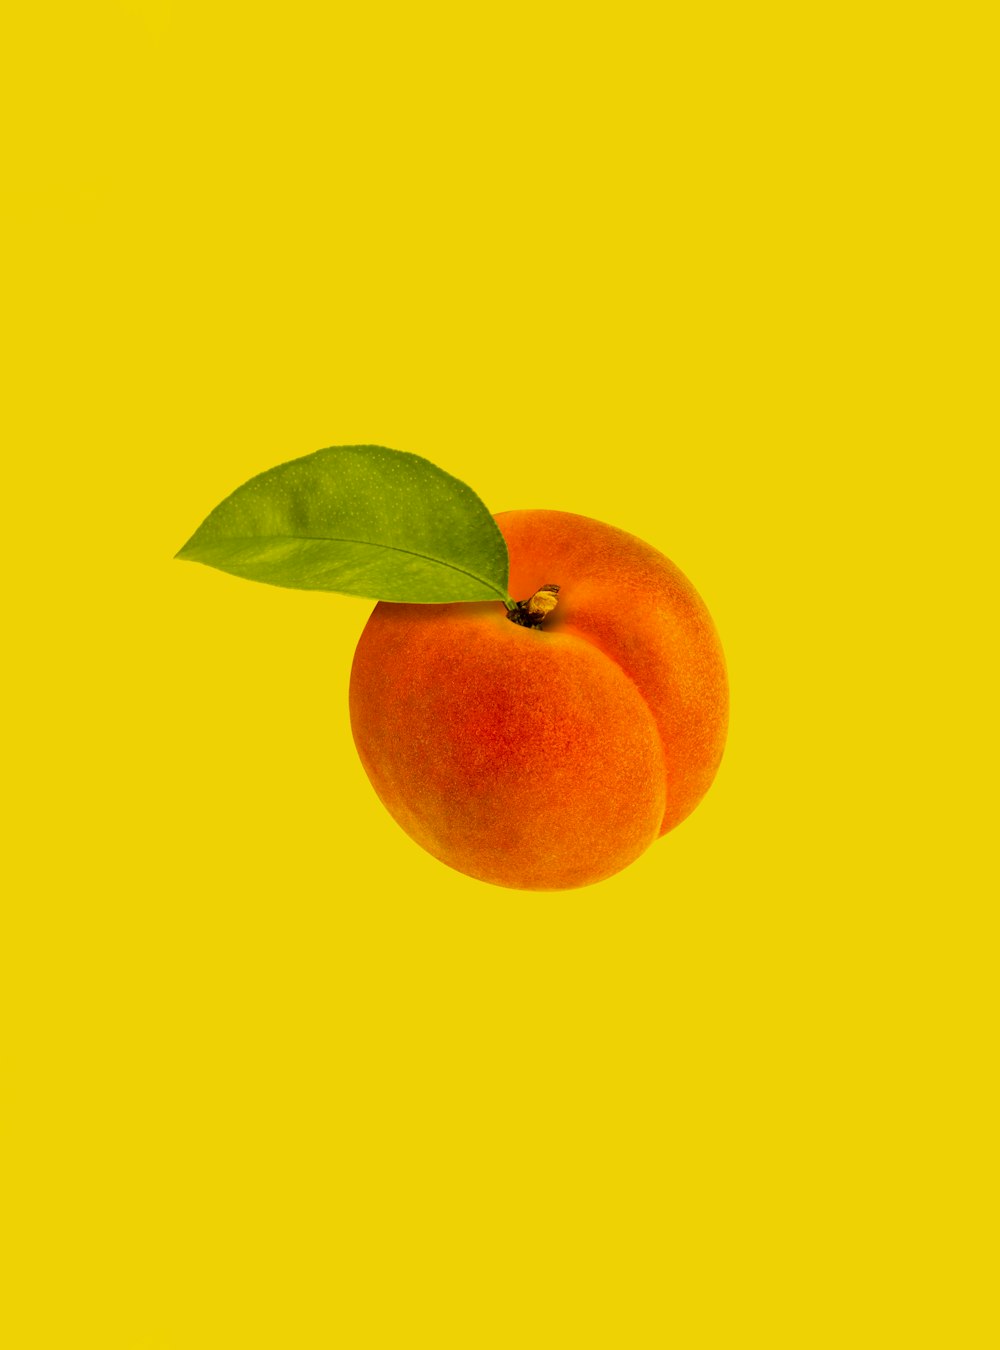 녹색 잎이있는 오렌지 과일